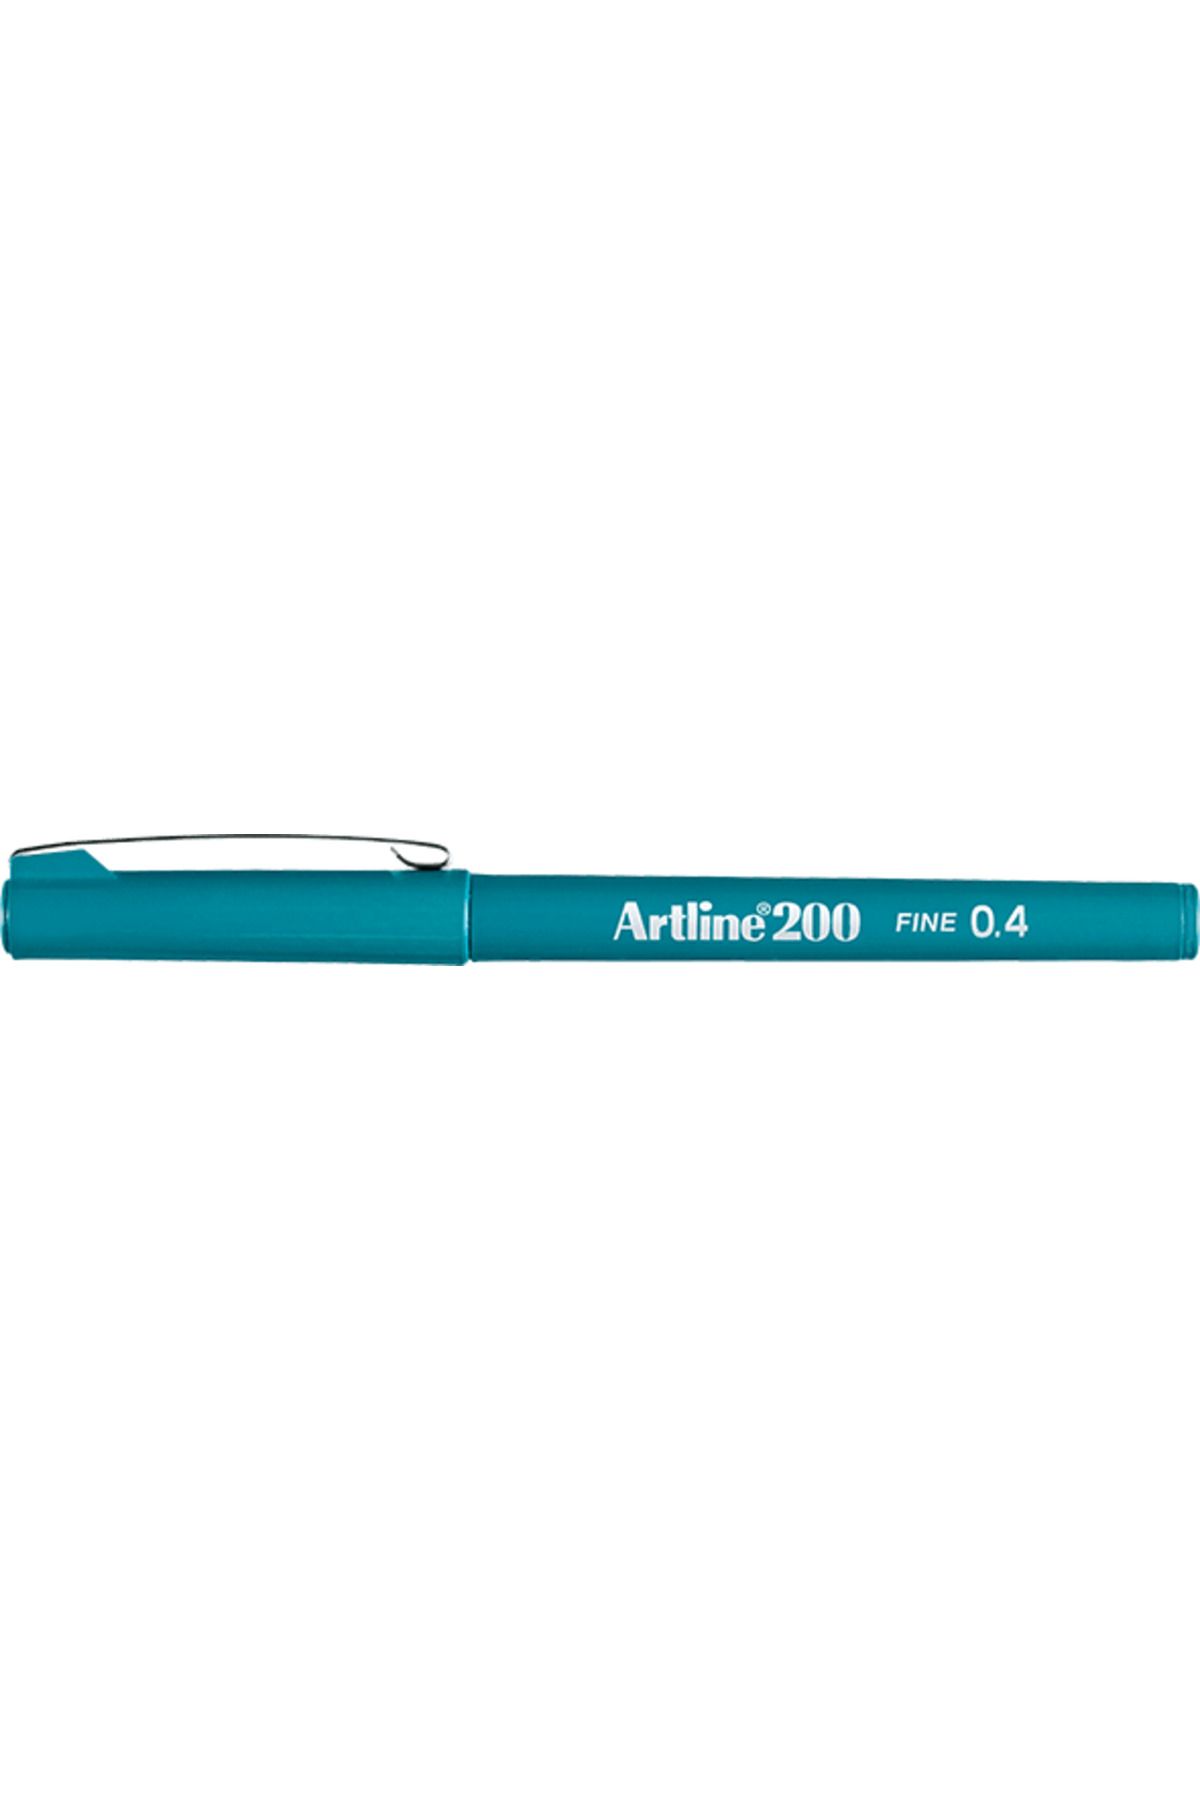 artline 200 Fineliner 0.4mm Keçe Uçlu Kalem Koyu Yeşil